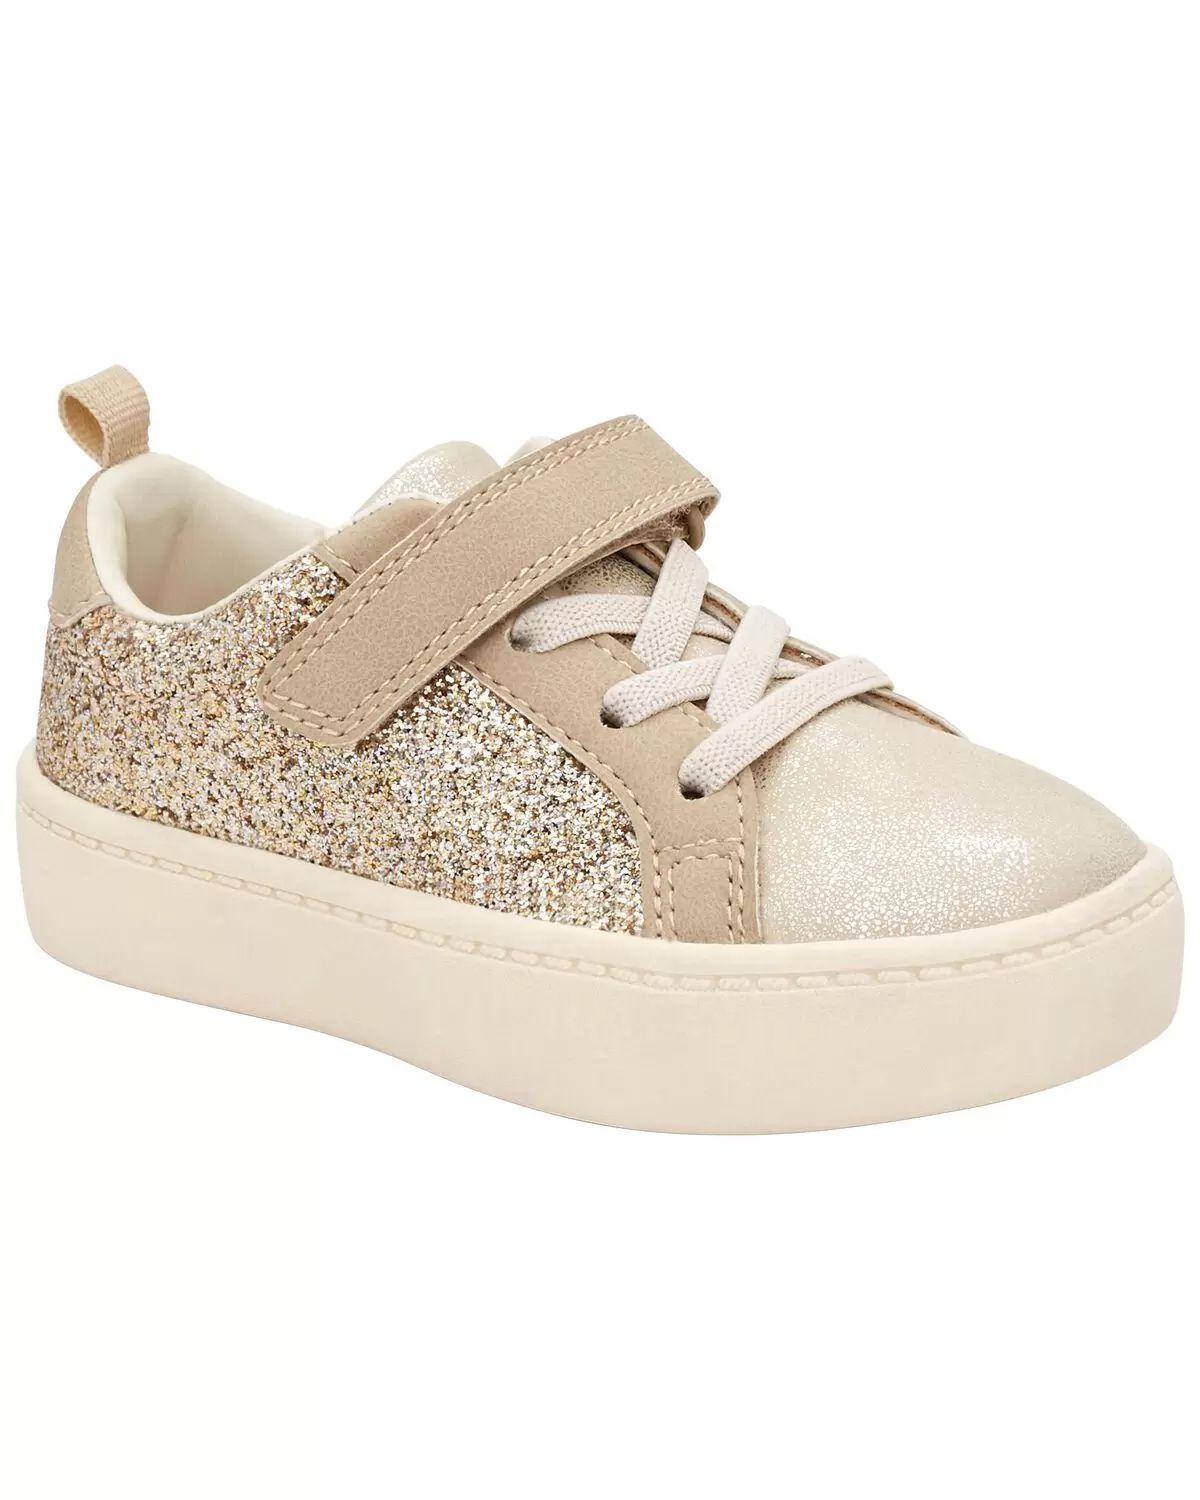 Toddler Glitter Sneakers | Carter's